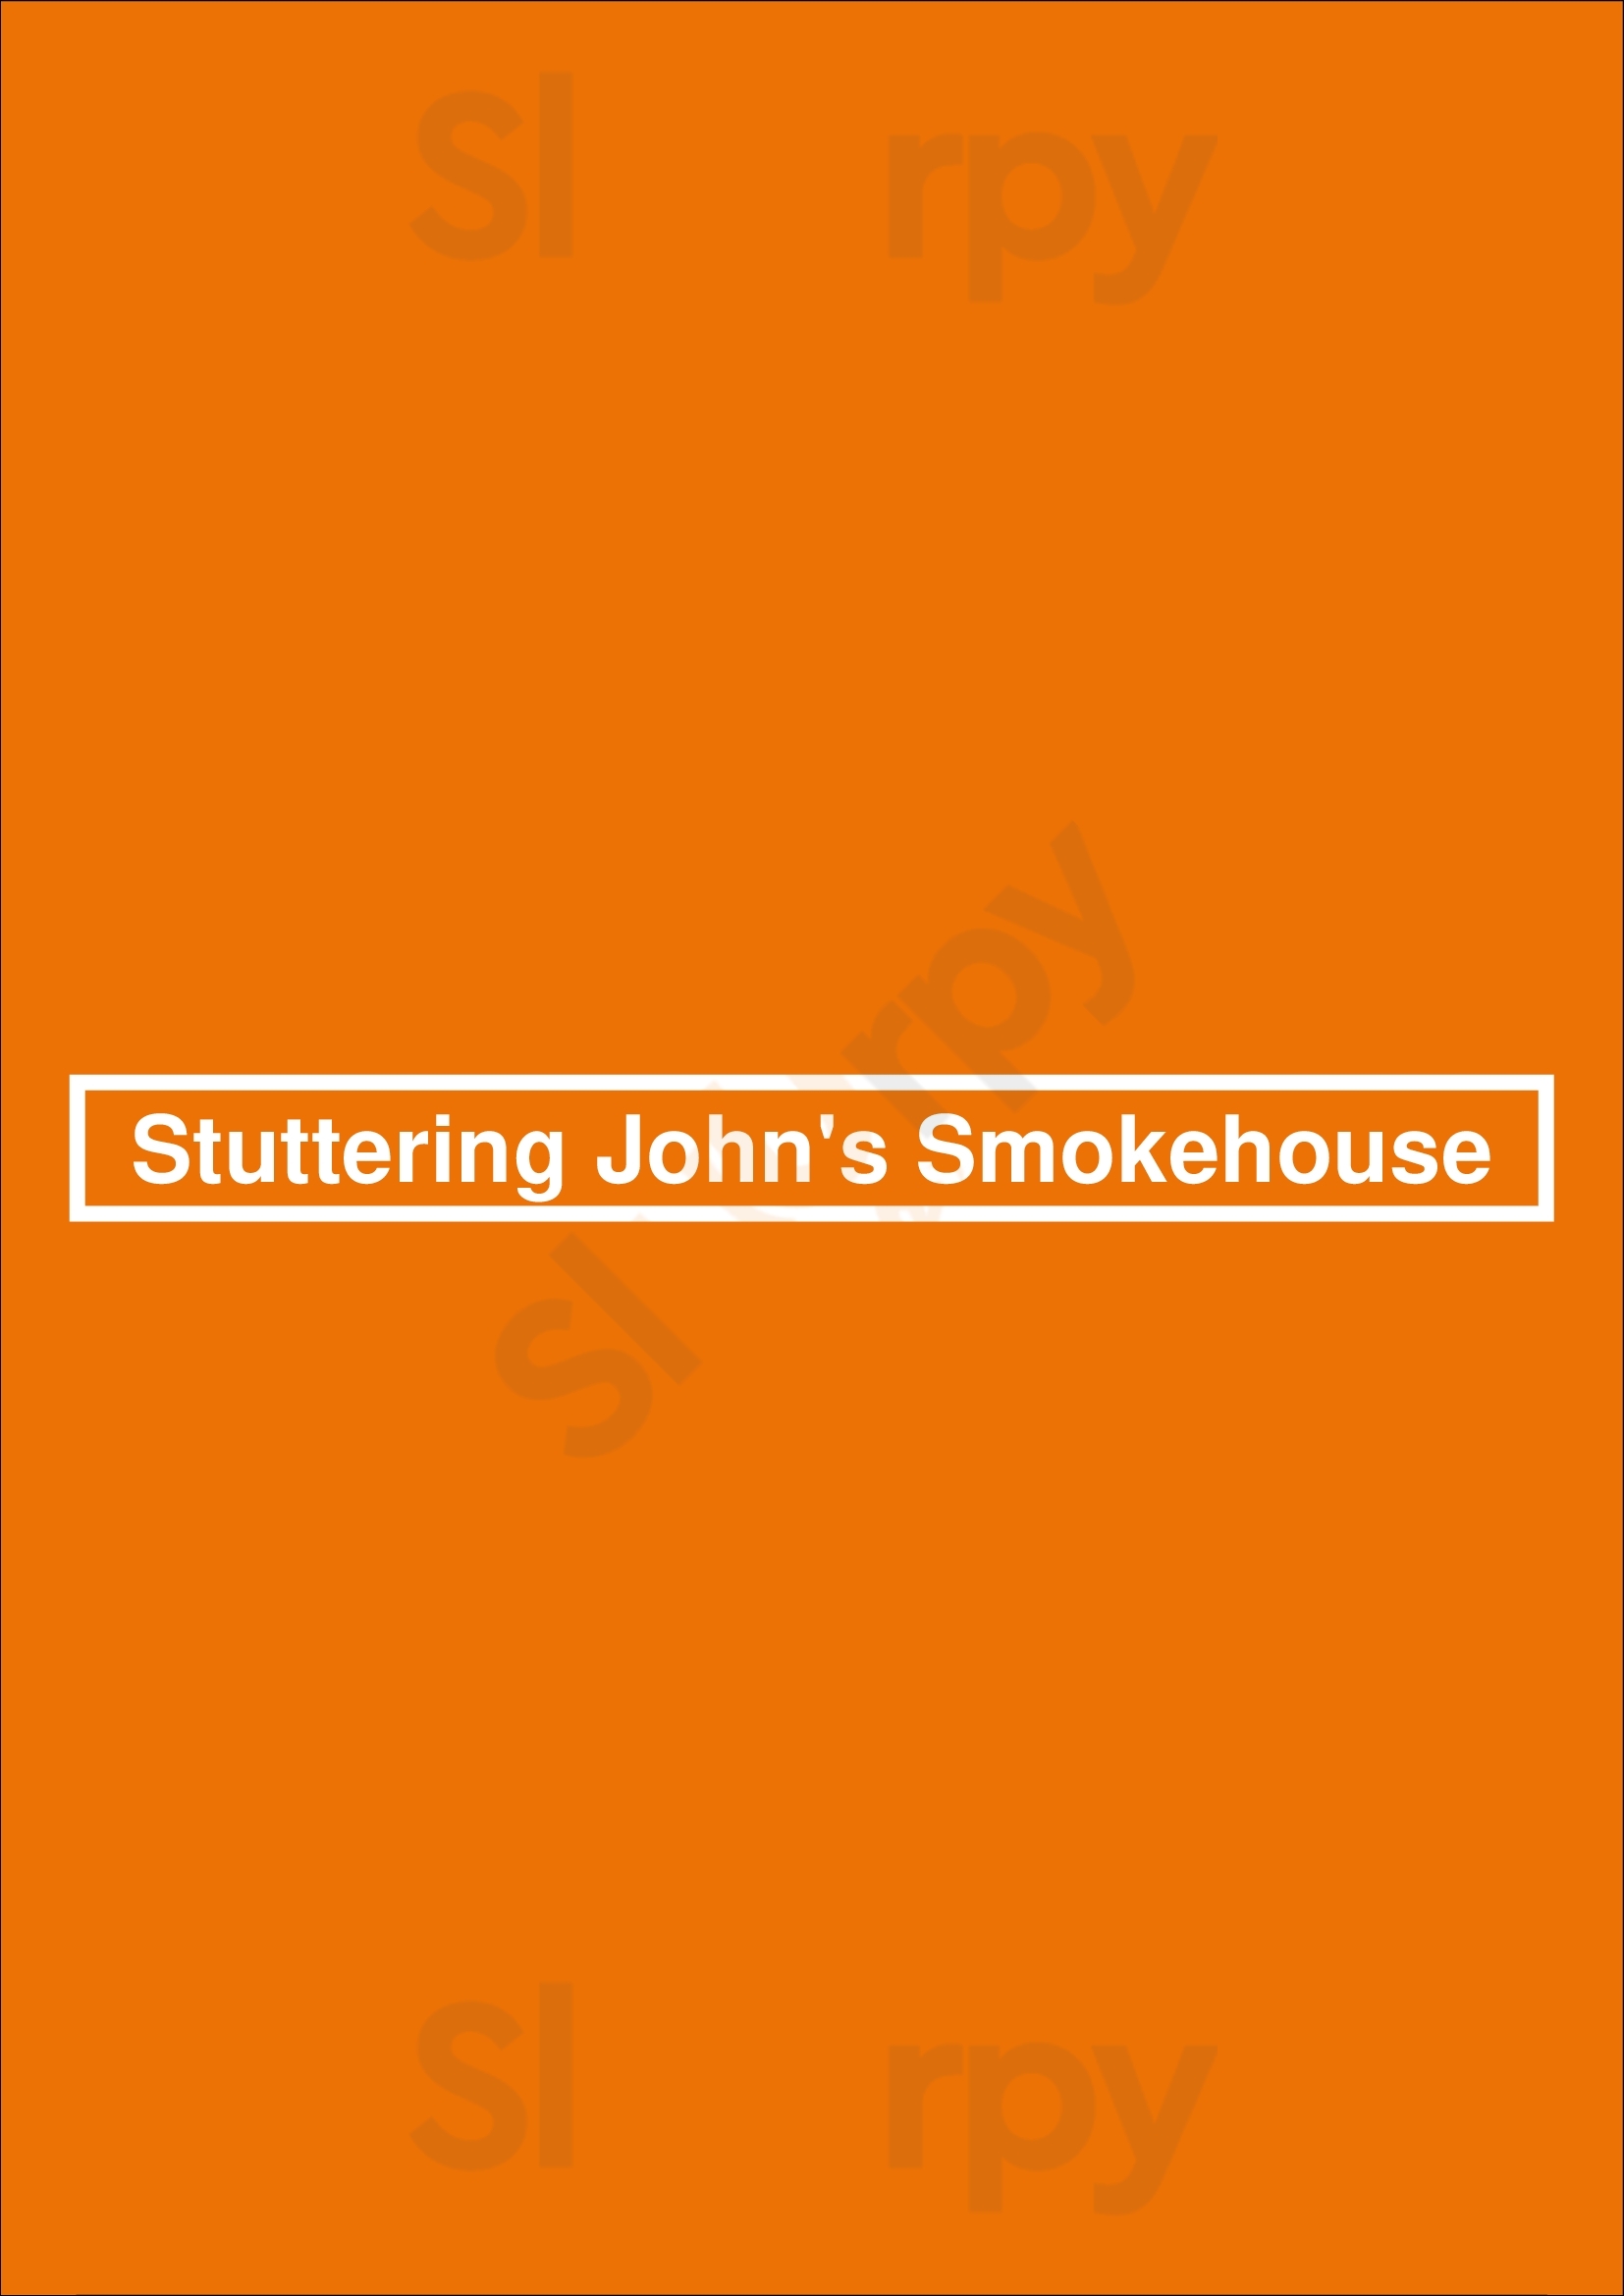 Stuttering John's Smokehouse Whitby Menu - 1